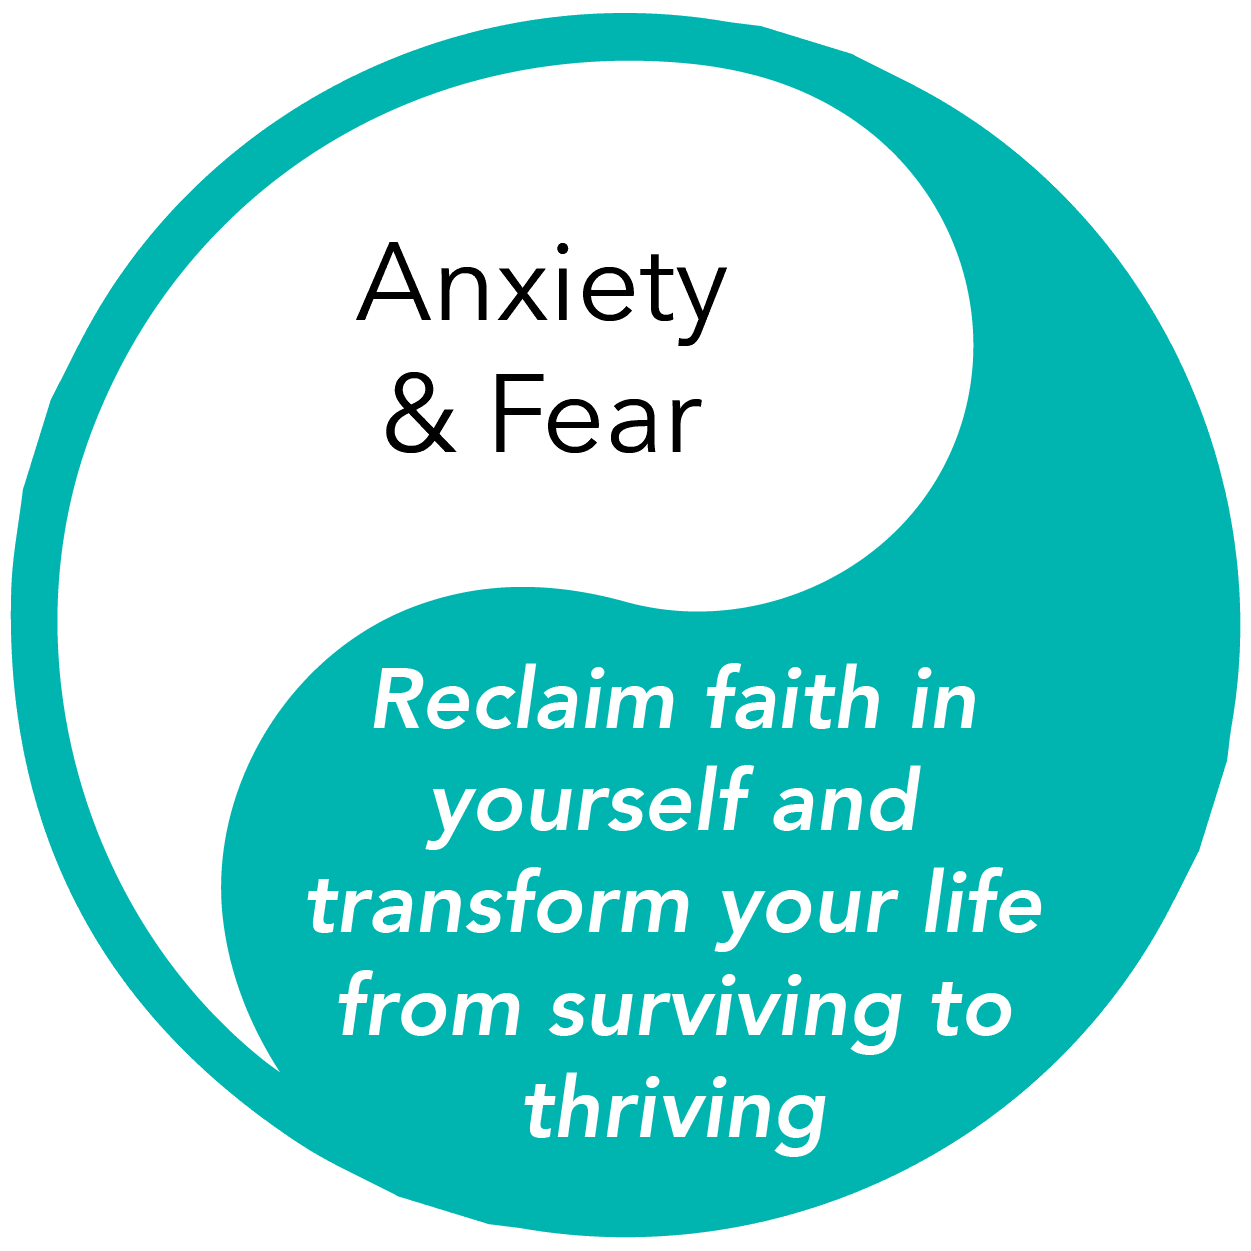 Anxiety & Fair: Reclaim Your Faith